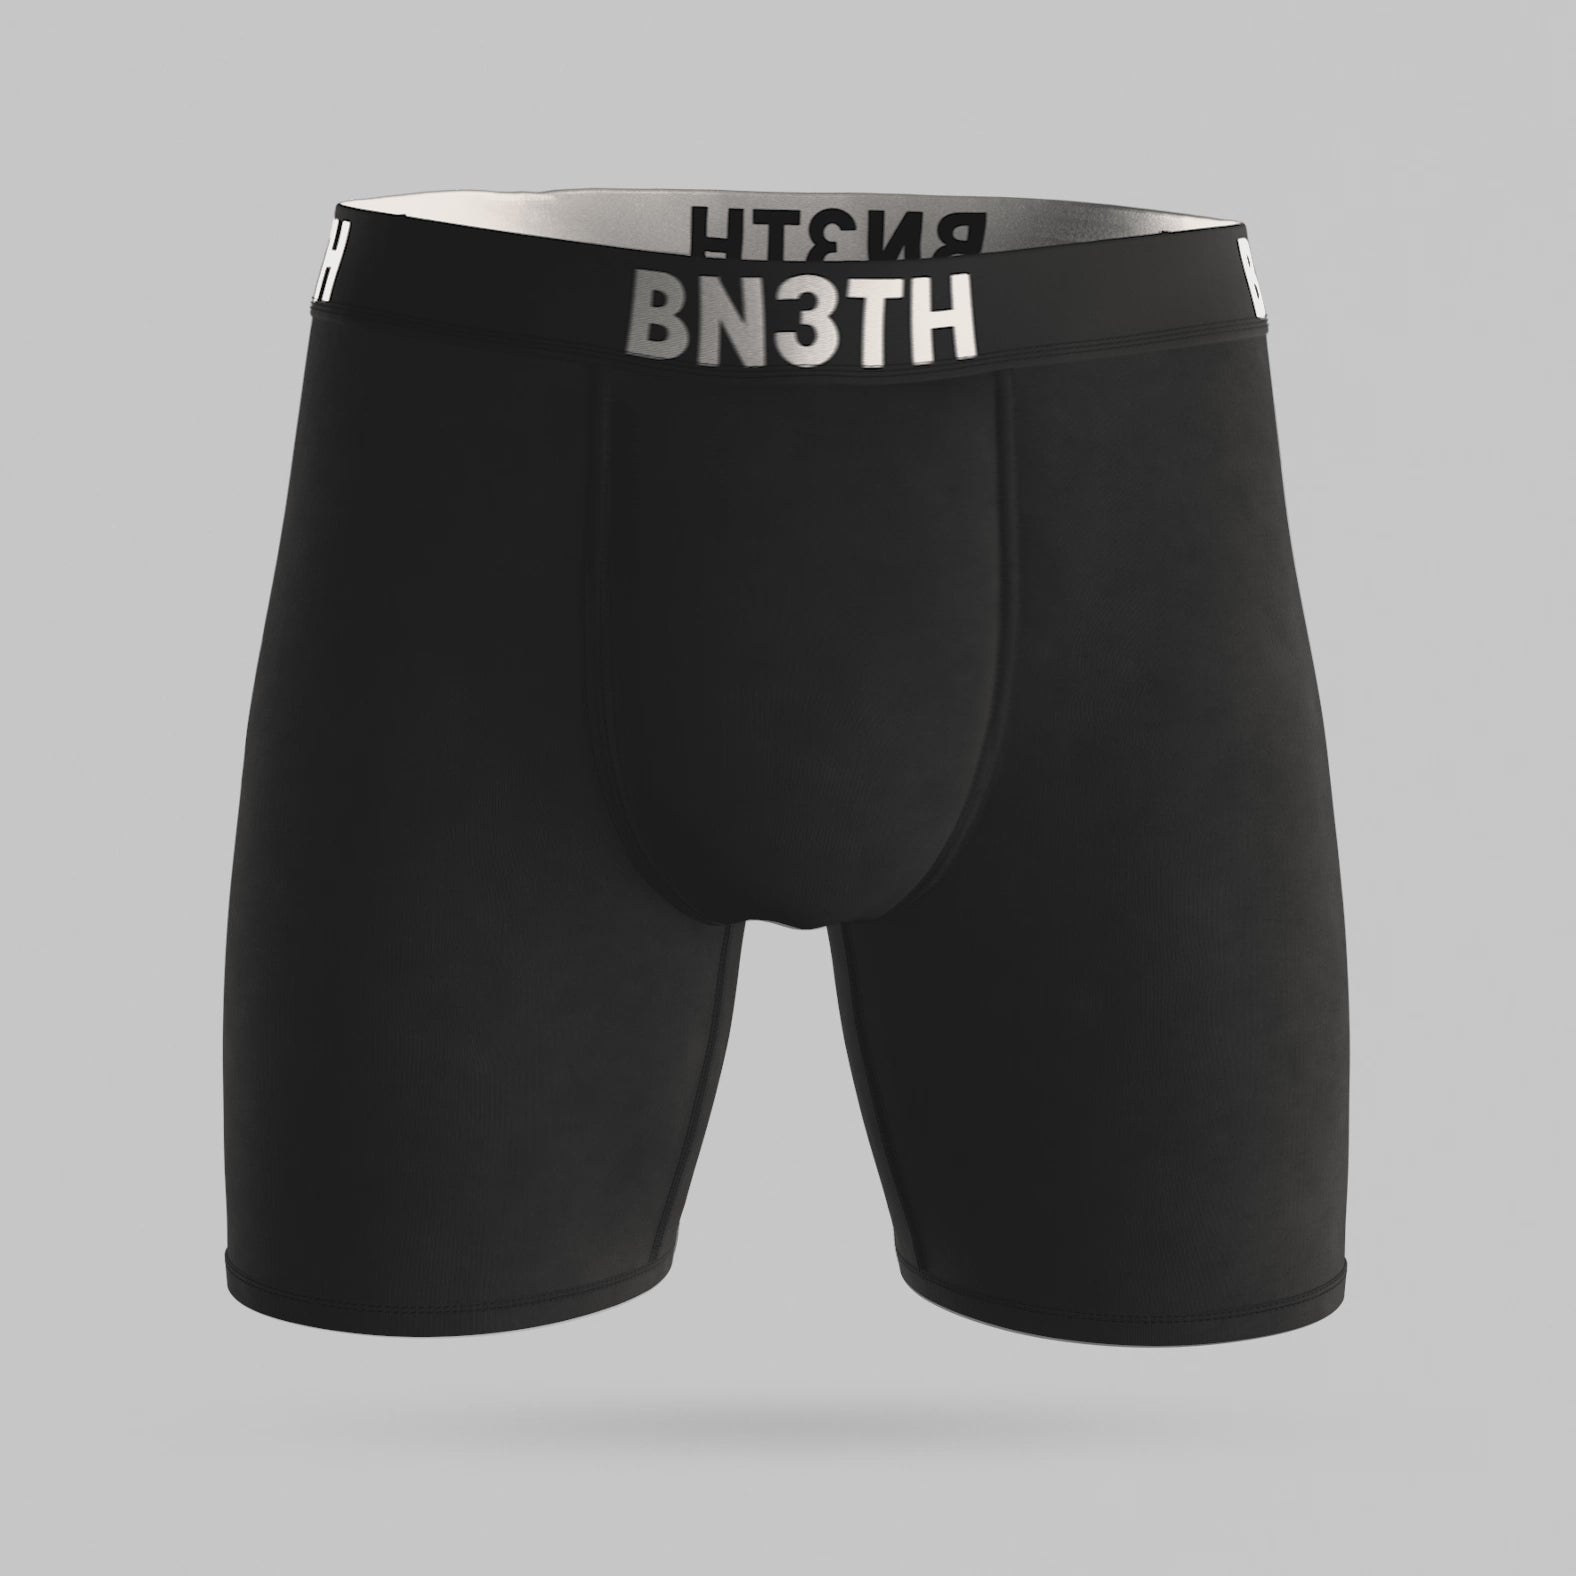 Pro Boxer Brief: Black  BN3TH Underwear –